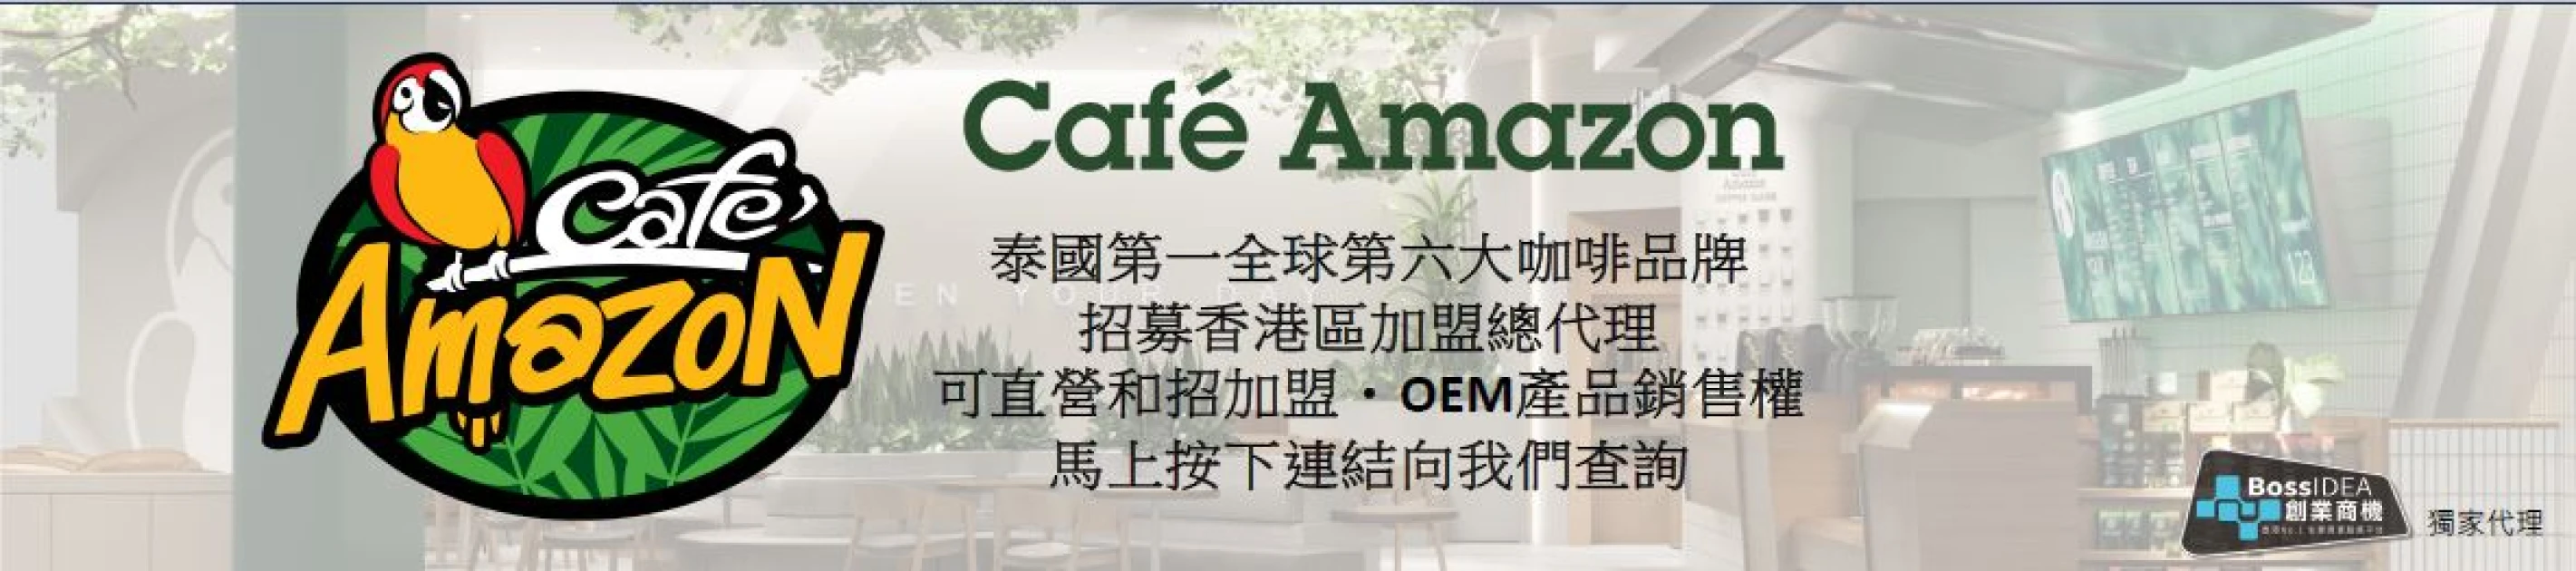 Cafe amazon